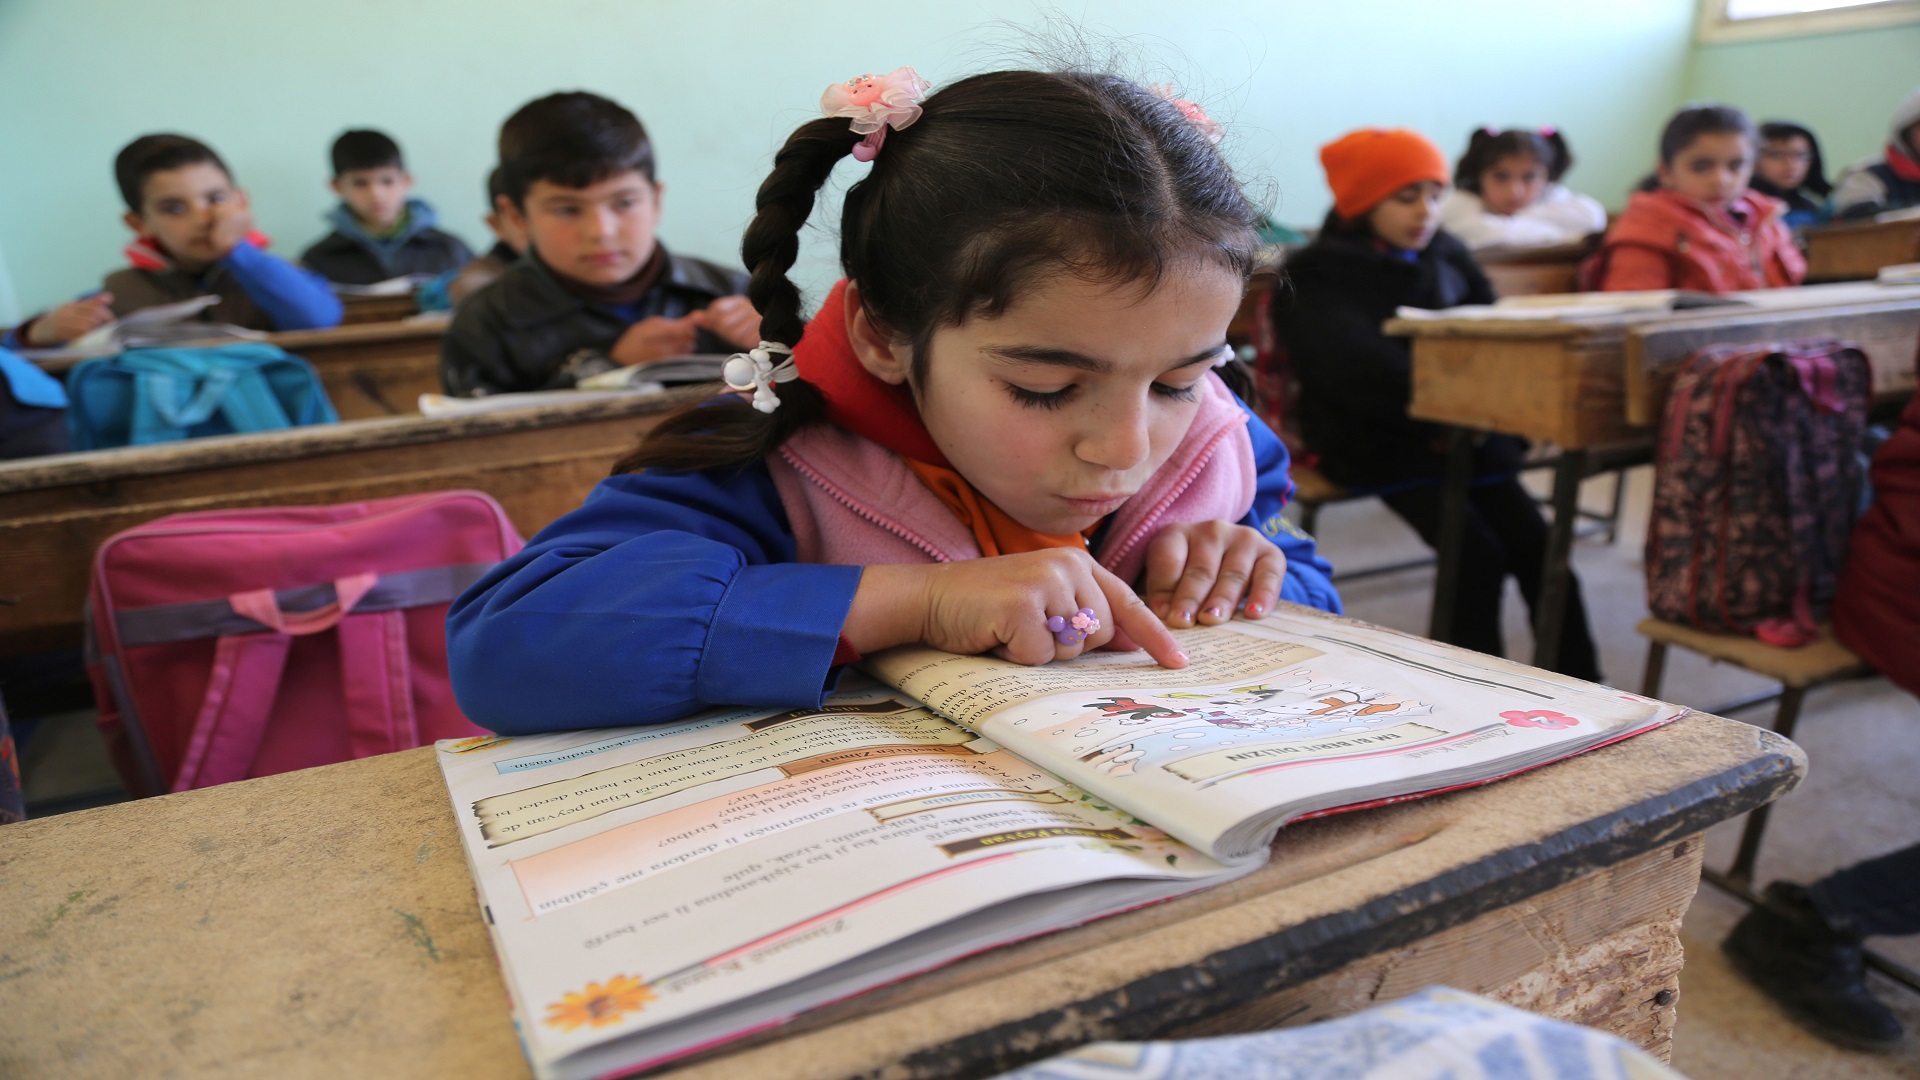 كشف وزير التربية والتعليم التابع لحكومة الأسد عن عدم رفض التربية لإدراج مناهج باللغة الكردية وفق شروط محددة.